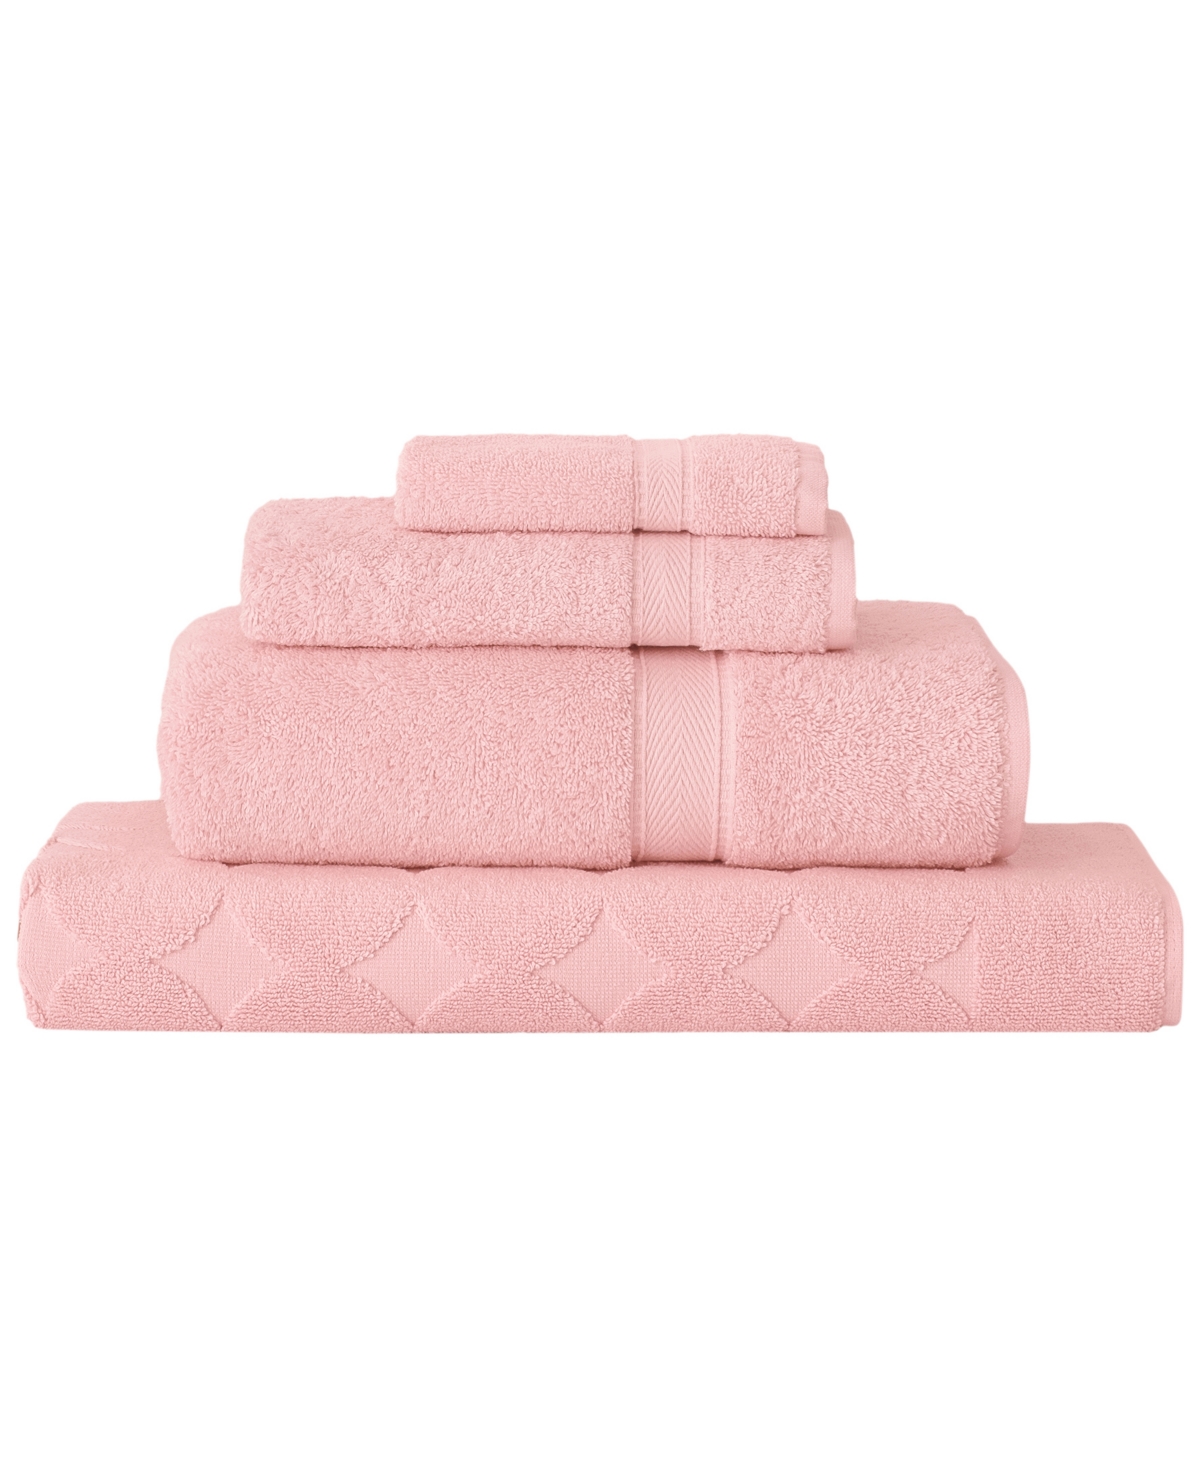 Linum Home Sinemis 4-pc. Towel Set In Pink